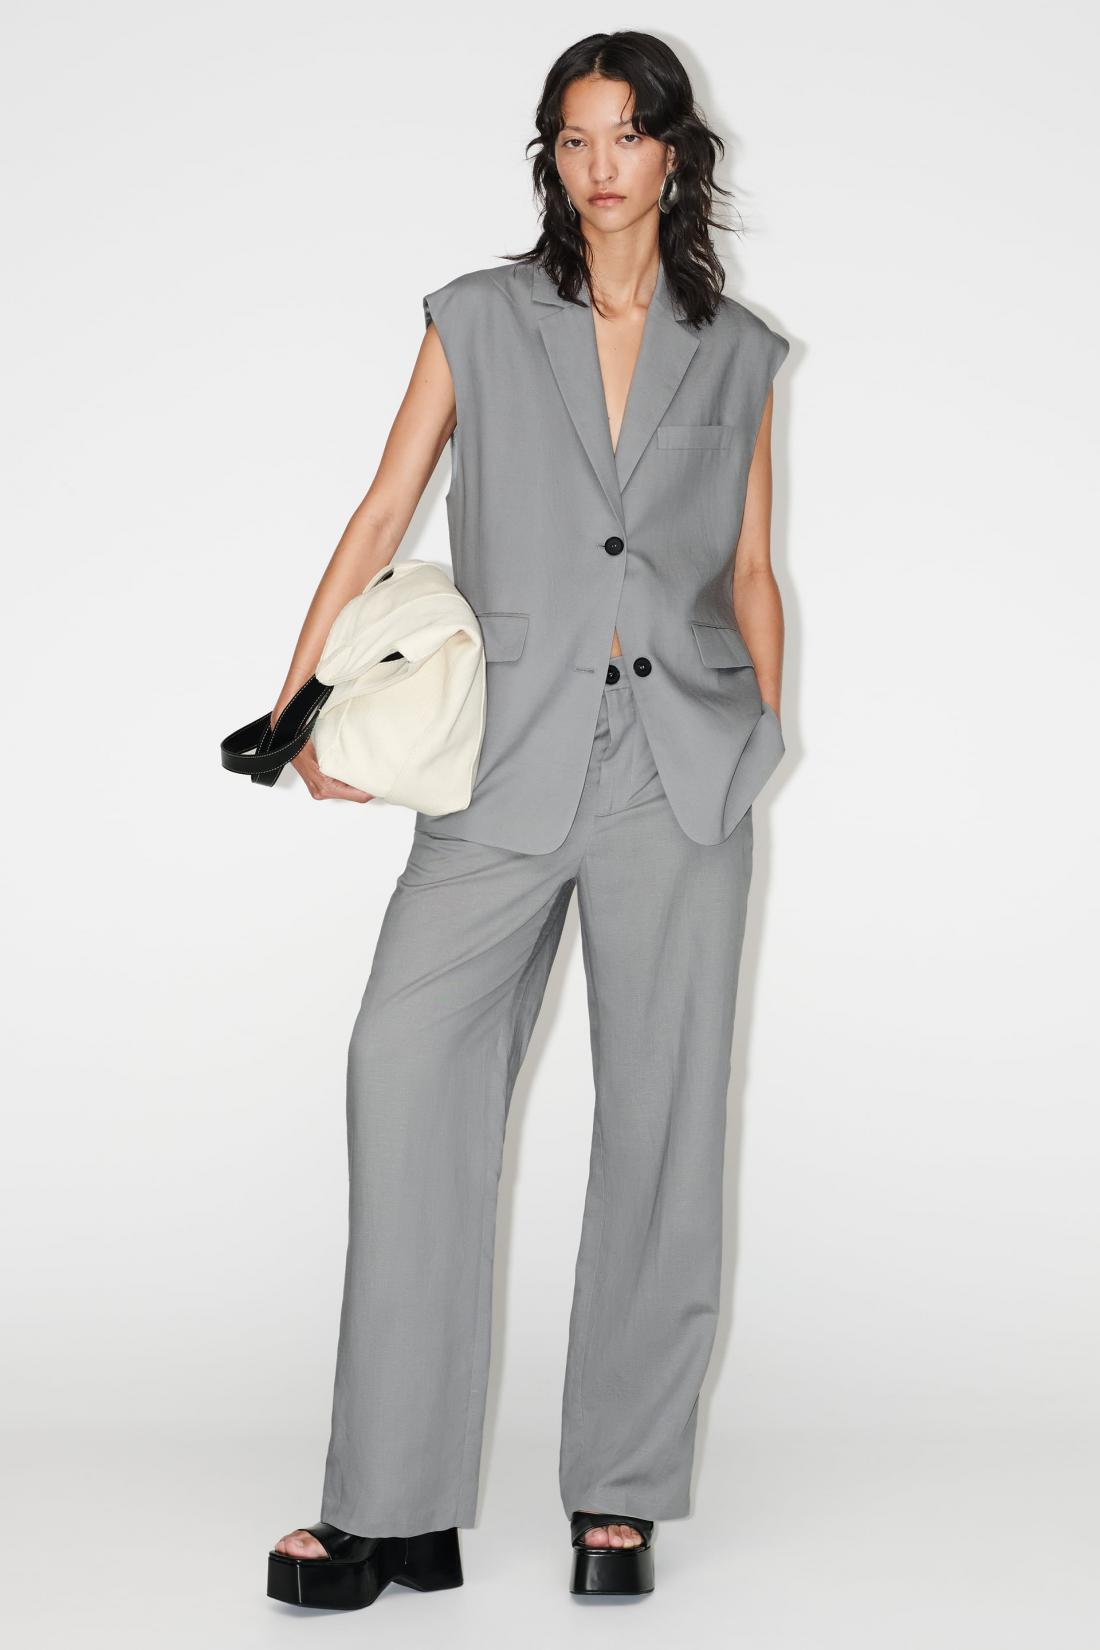 Siv komplet Zara, hlače 39,95€, brezrokavnik 49,95€